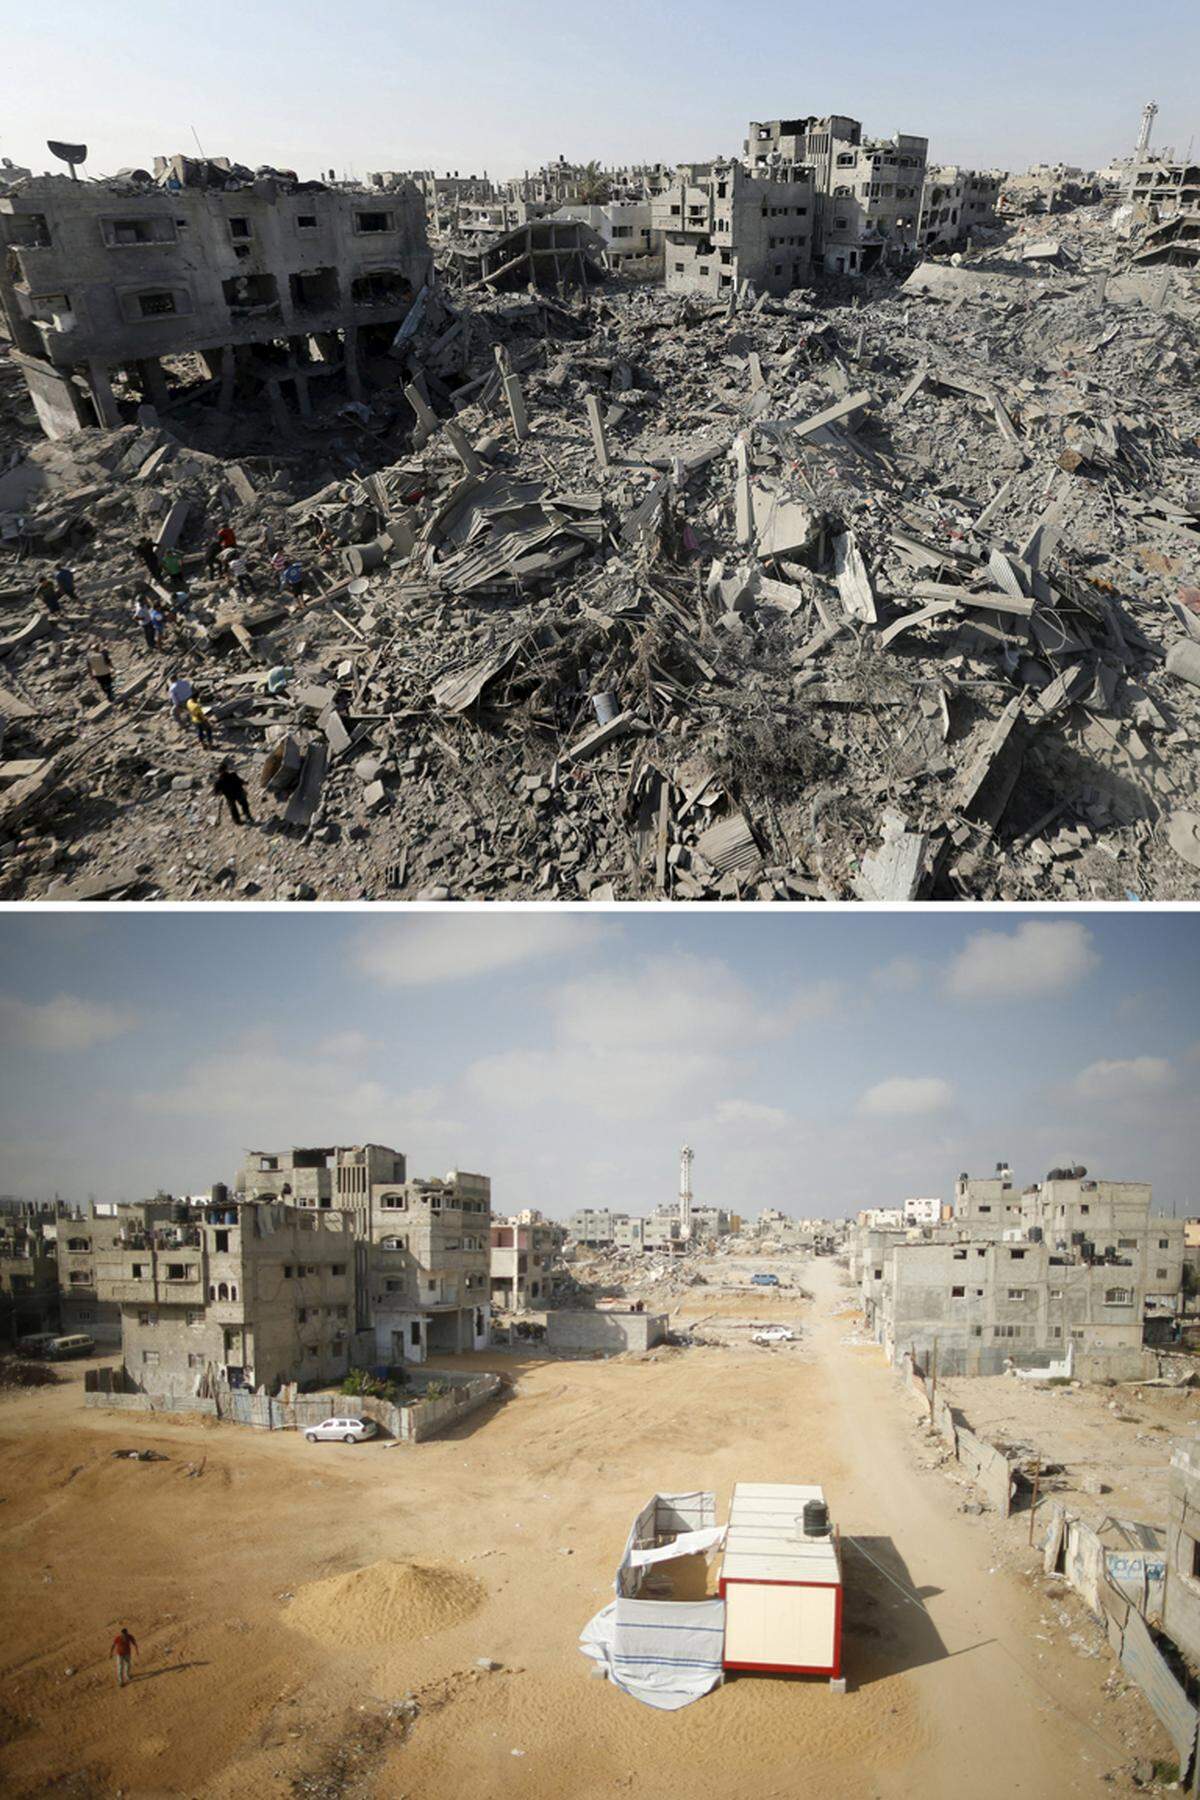 Ab 8. Juli 2014 flog Israel Luftangriffe auf den Gazastreifen, beschossen Hamas-Truppen israelische Städte. 50 Tage dauerte der Krieg, er endete am 26. August vor einem Jahr. 2100 Palästinenser kamen ums Leben, die meisten davon Zivilisten. Auf israelischer Seite starben 73 Menschen, großteils Soldaten. Im Gazastreifen wurden mehr als 12.000 Wohnungen wurden zerstört, 100.000 beschädigt. - wiederaufgebaut wurde bisher nichts. Am 1. August 2014 entstand das obere Bild im Viertel Sehjaia im Osten von Gaza-Stadt. Ein Jahr später wurden die Trümmer beiseite geräumt, aufgebaut wurde nichts.